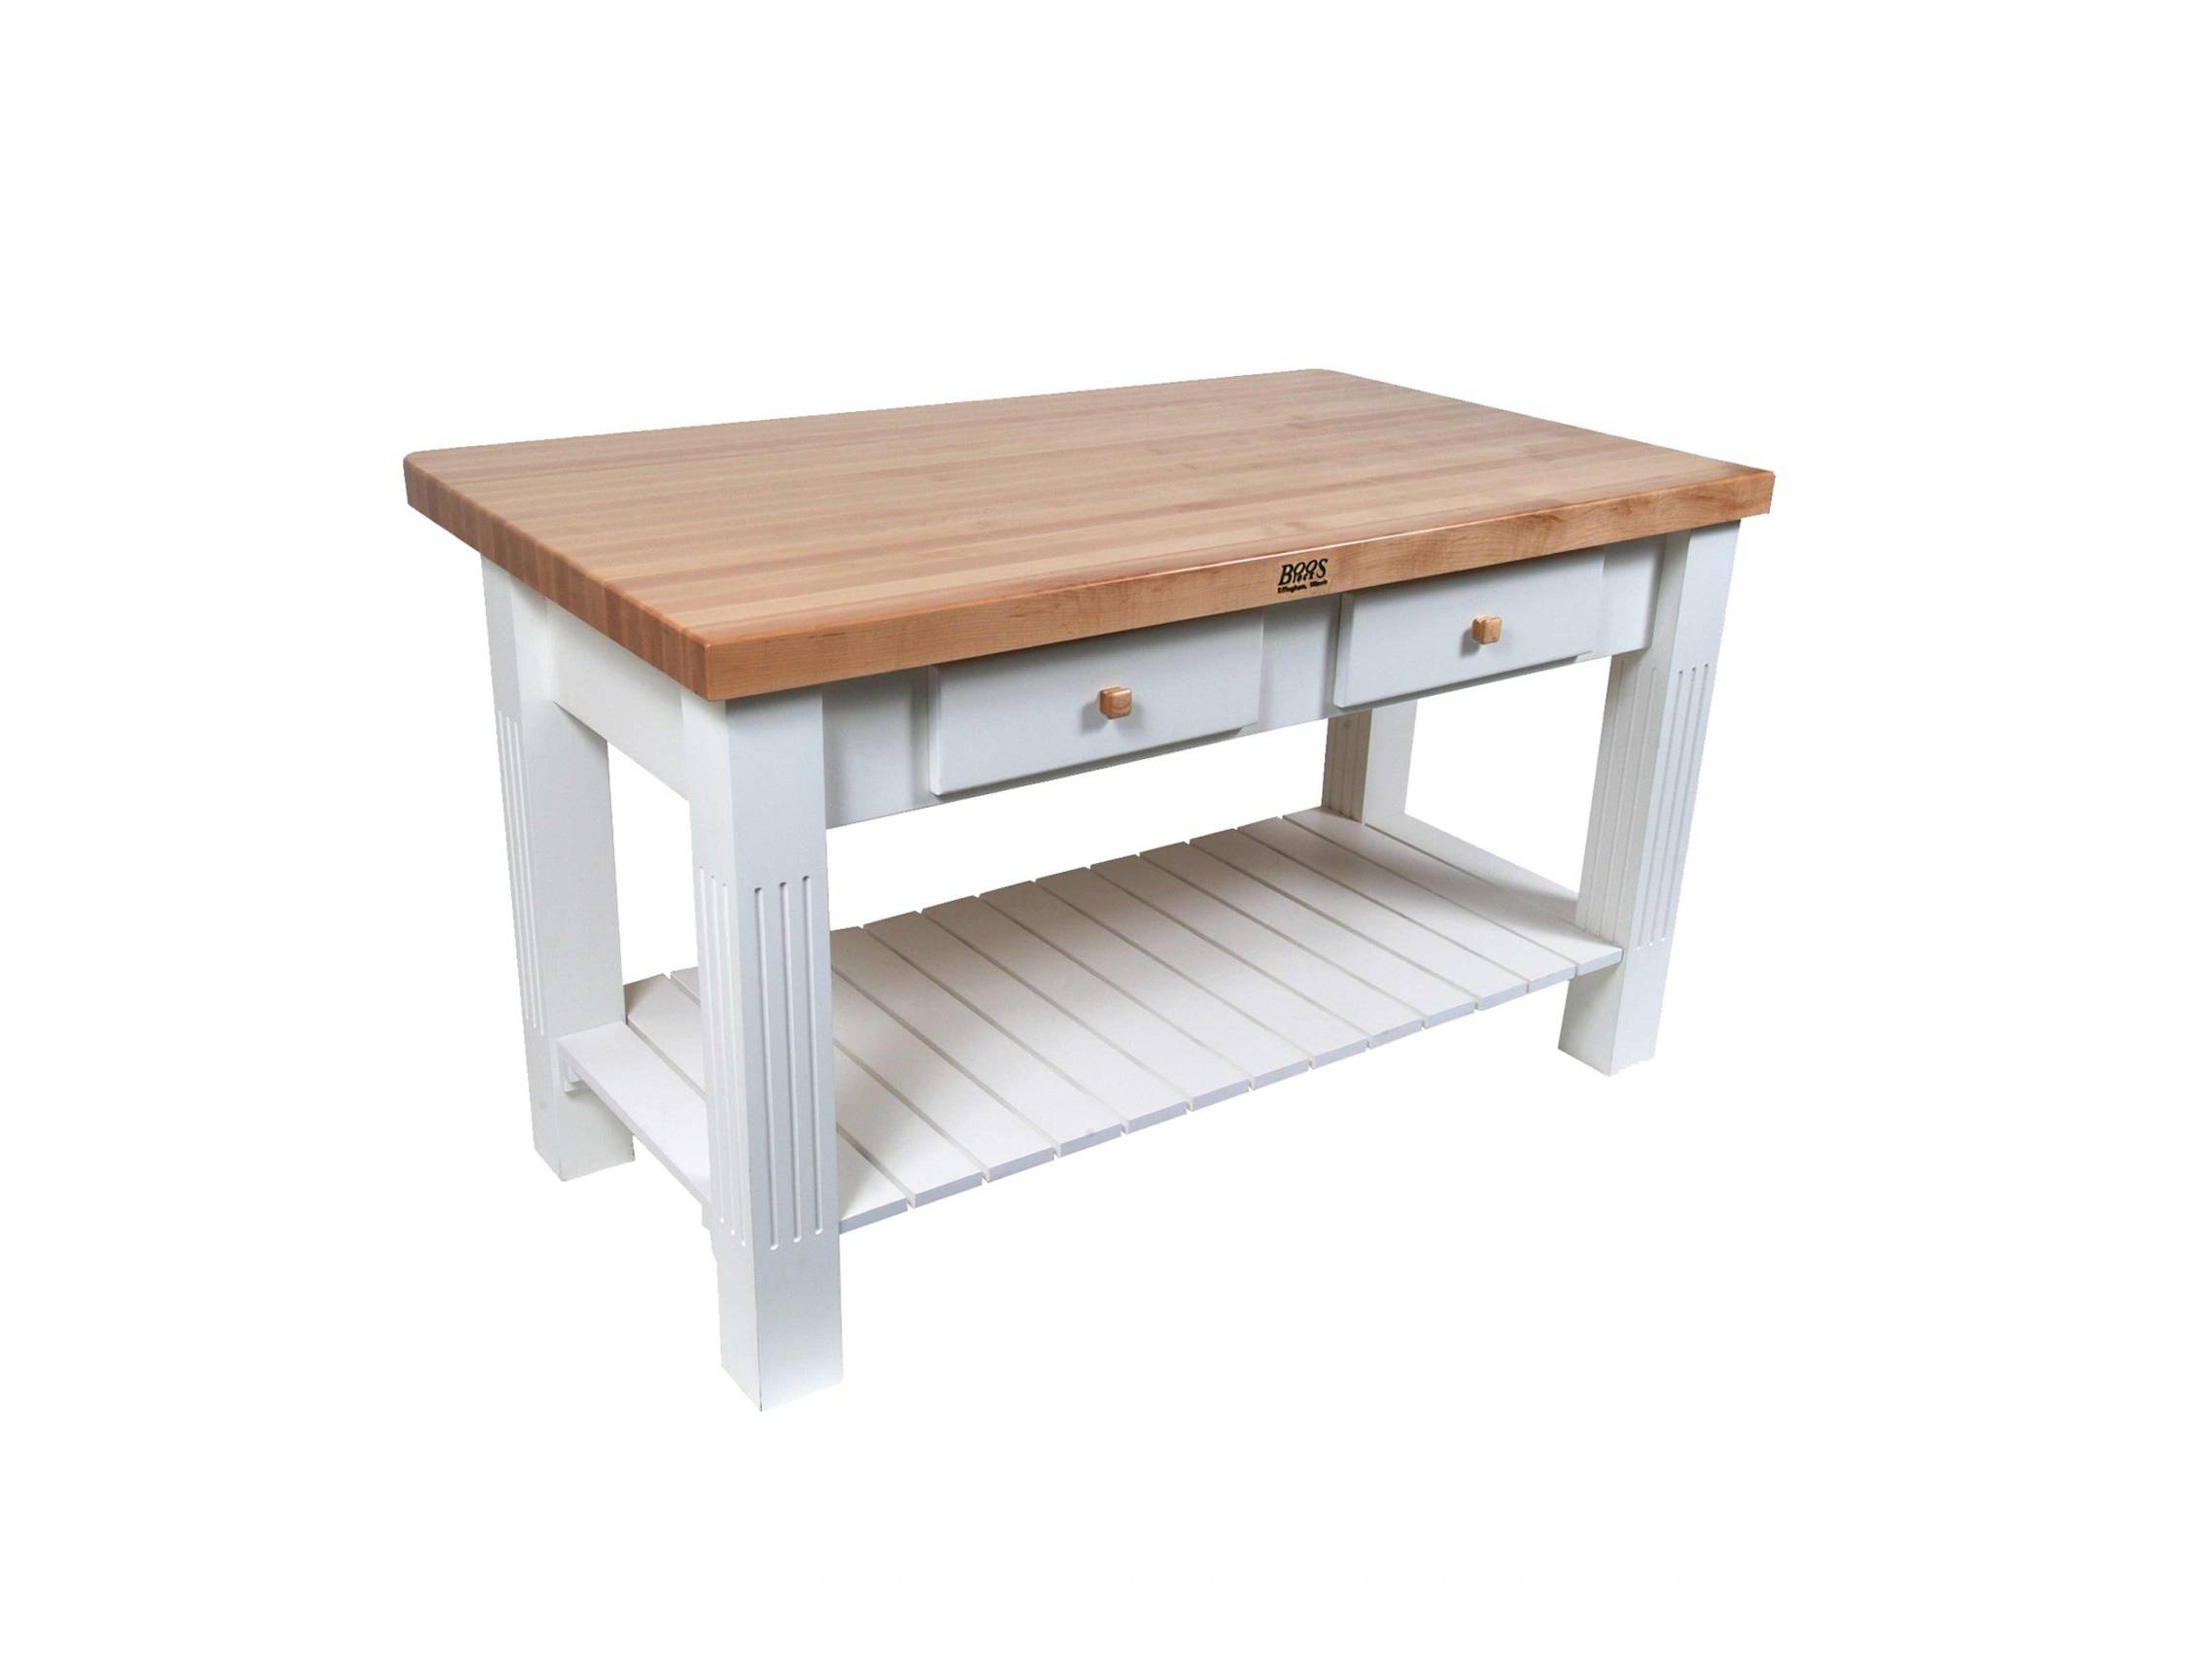 Boos® Maple Grazzi Table mit Langholzplatte inkl. umklappbarem Plattenteil (ca. 20cm), unterer Ablage und Utensilienschubladen 31